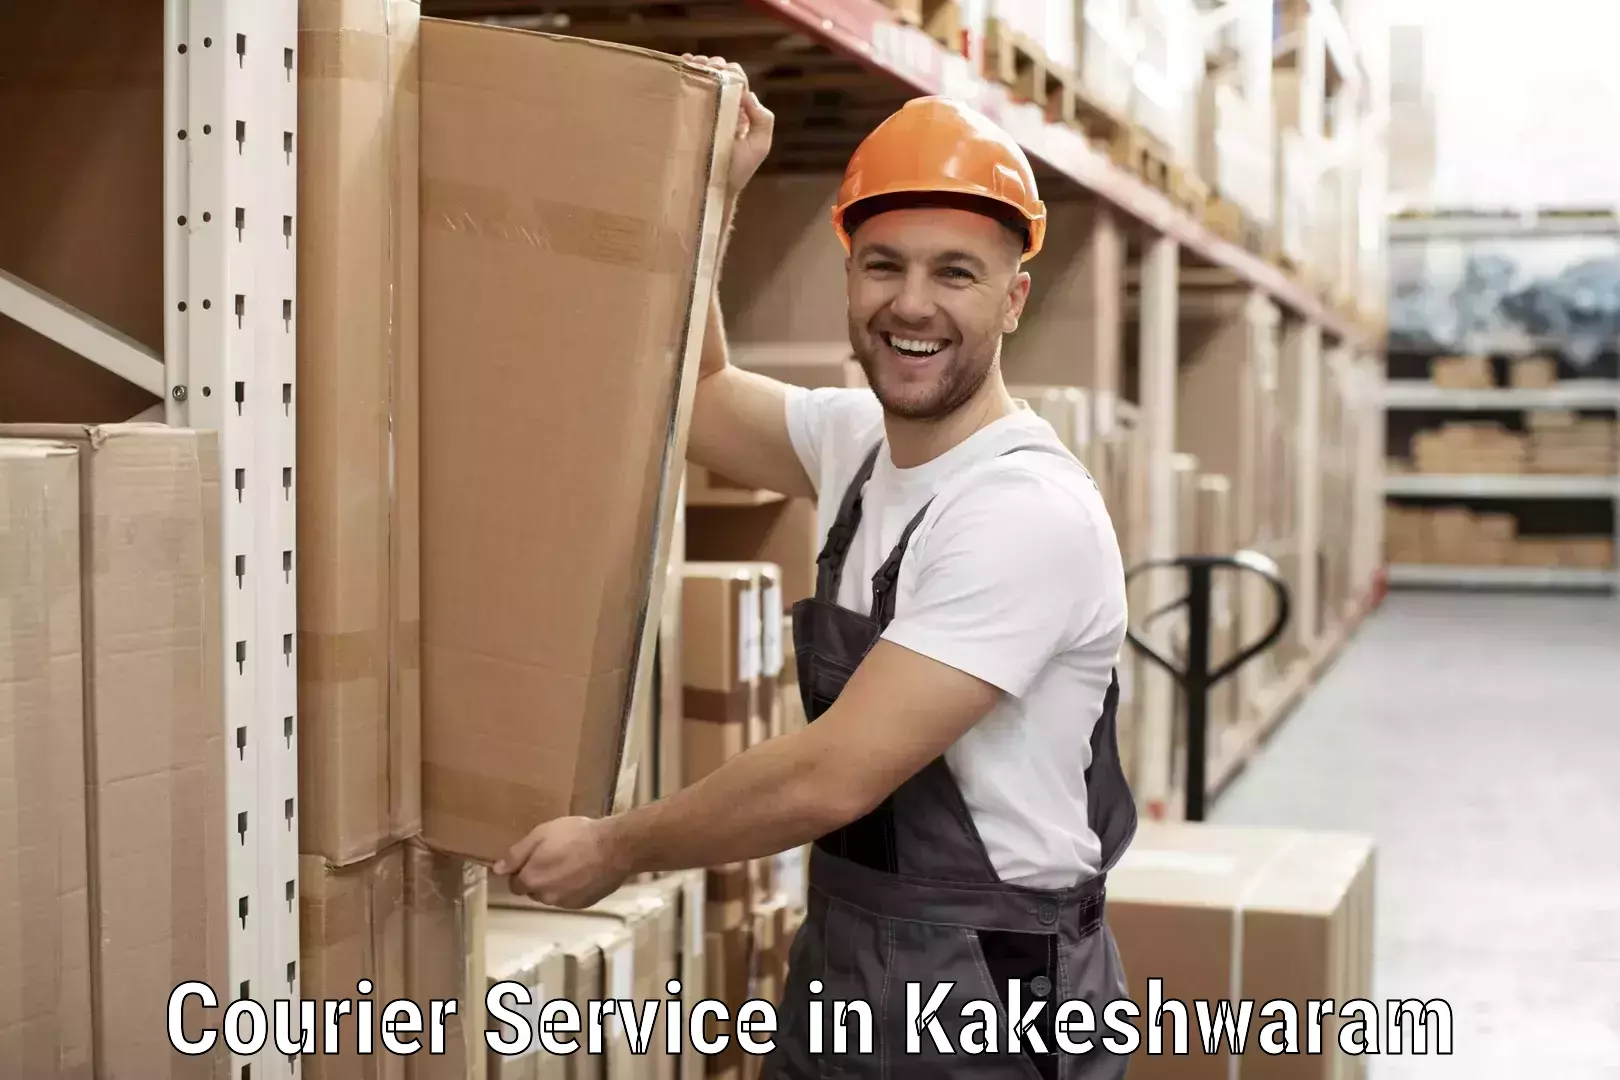 Courier service innovation in Kakeshwaram